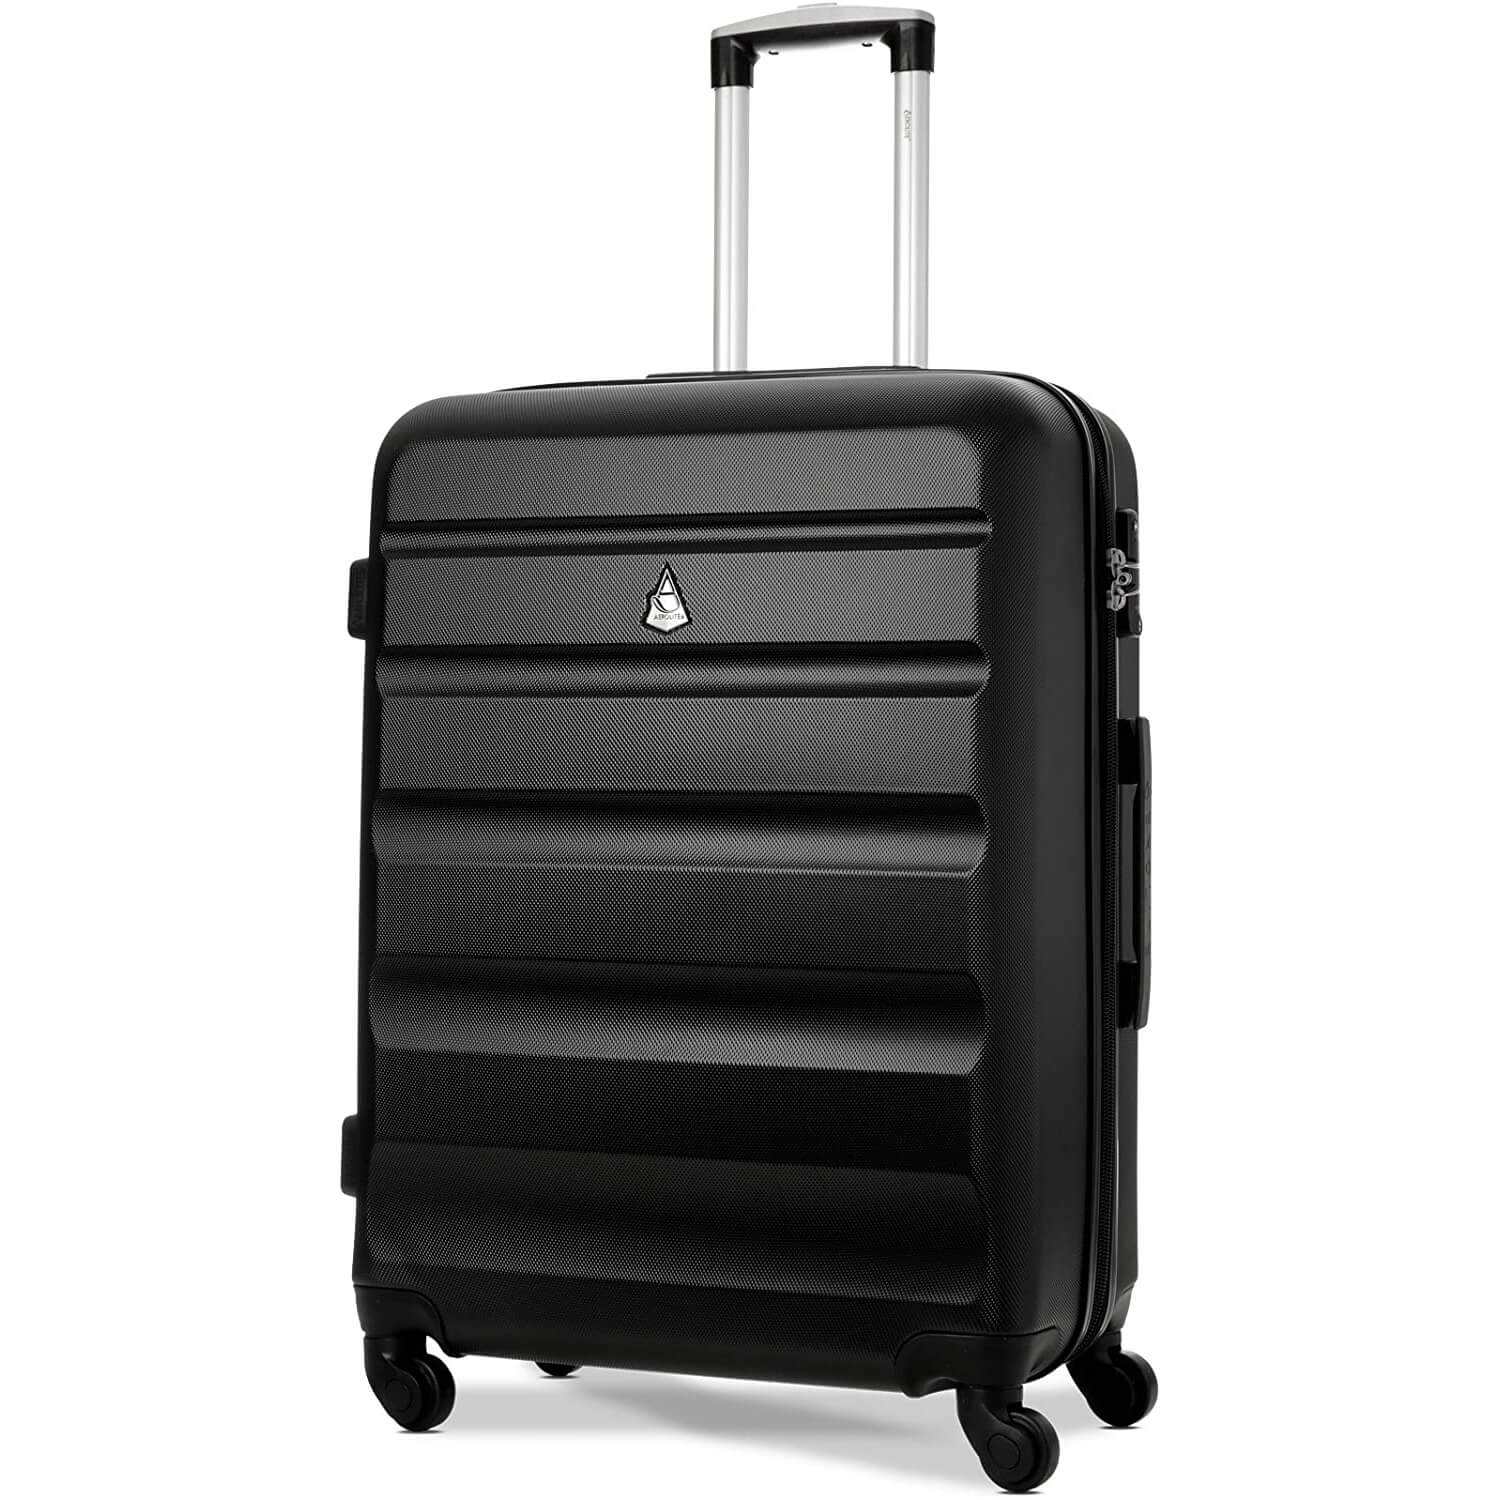 Aerolite Hard Shell Suitcase Luggage Group Travel Bundle - 2 x 21 Cabin Hand Luggage + 1 x Large 29" Hold Luggage Suitcase (3 Piece Luggage Set) - Black